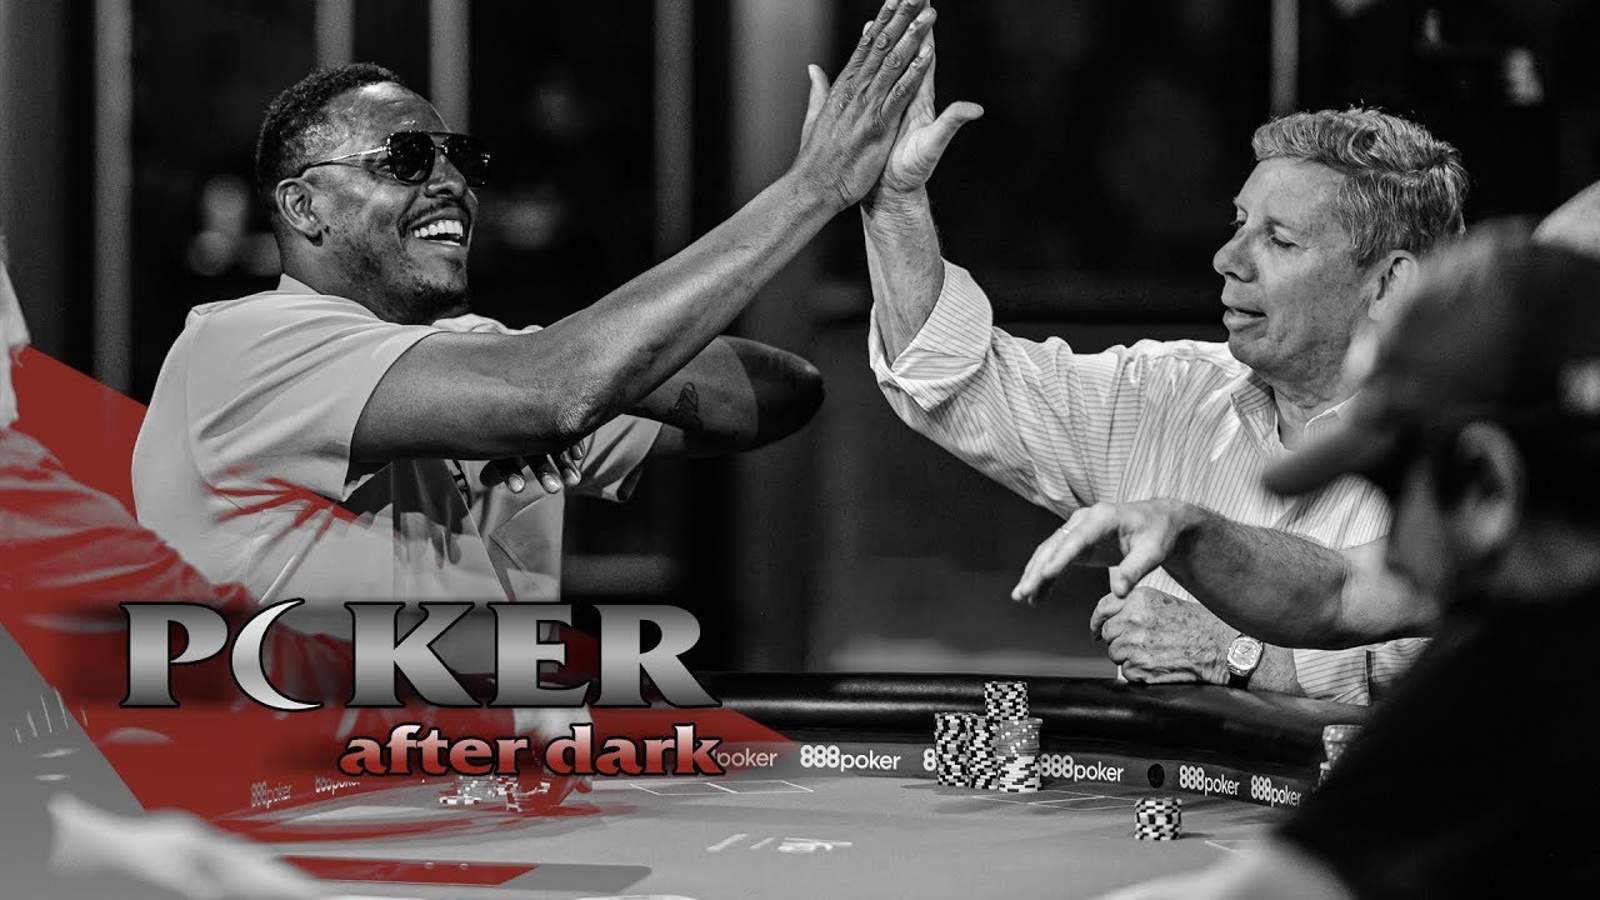 Paul Pierce Wins $40,000 on Poker After Dark